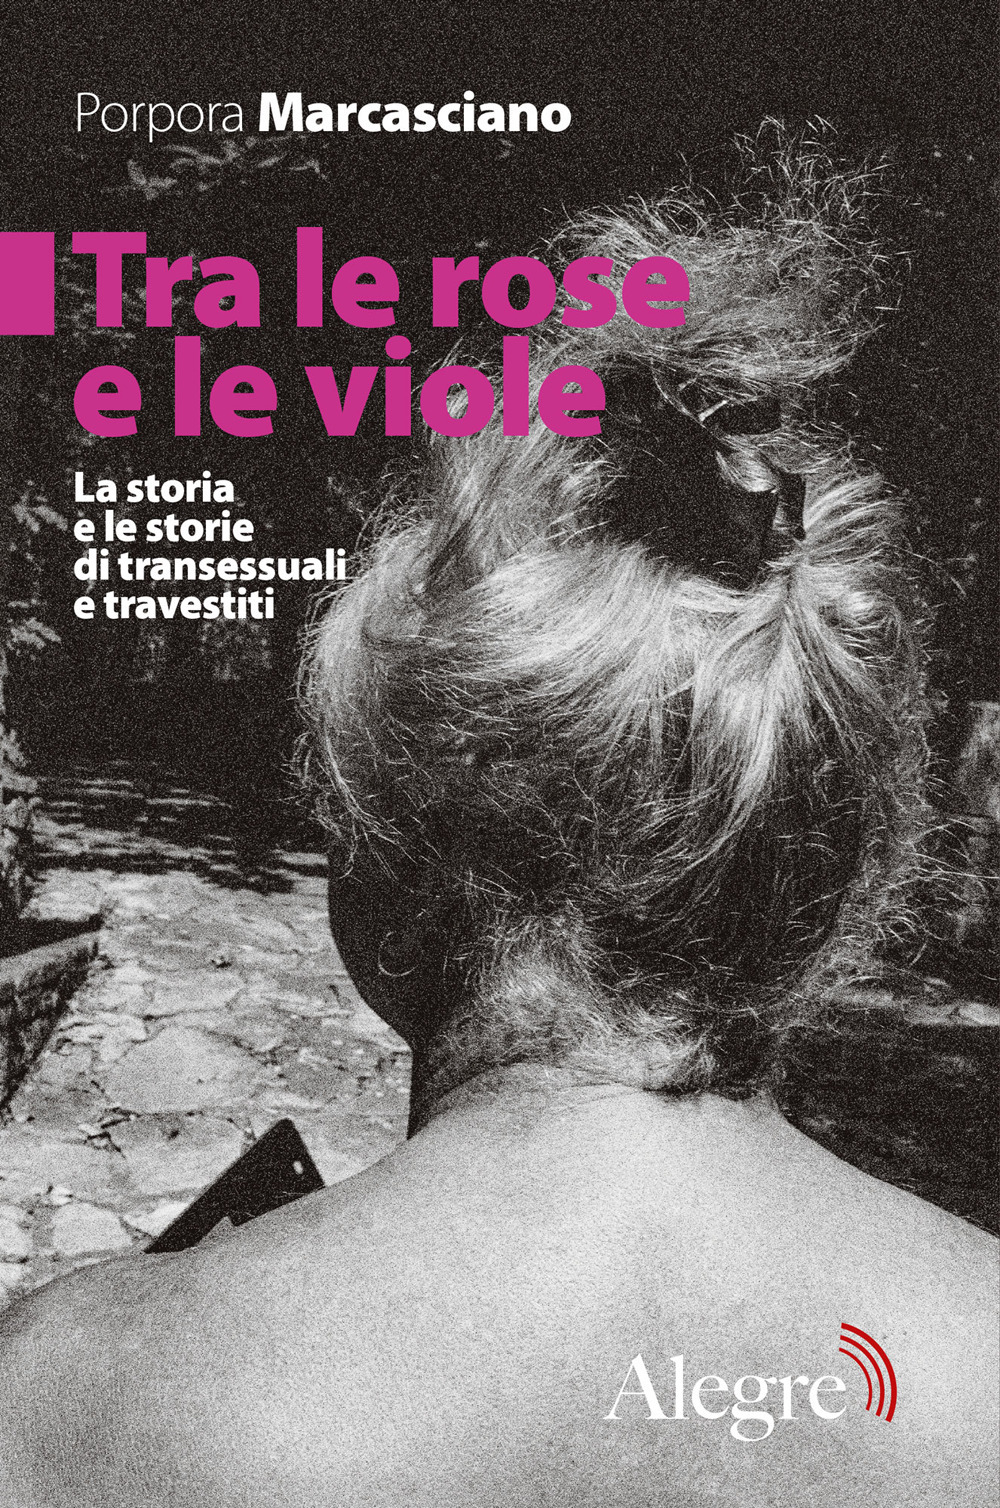 Tra le rose e le viole (Paperback, Italiano language, 2020, Alegre Edizioni)